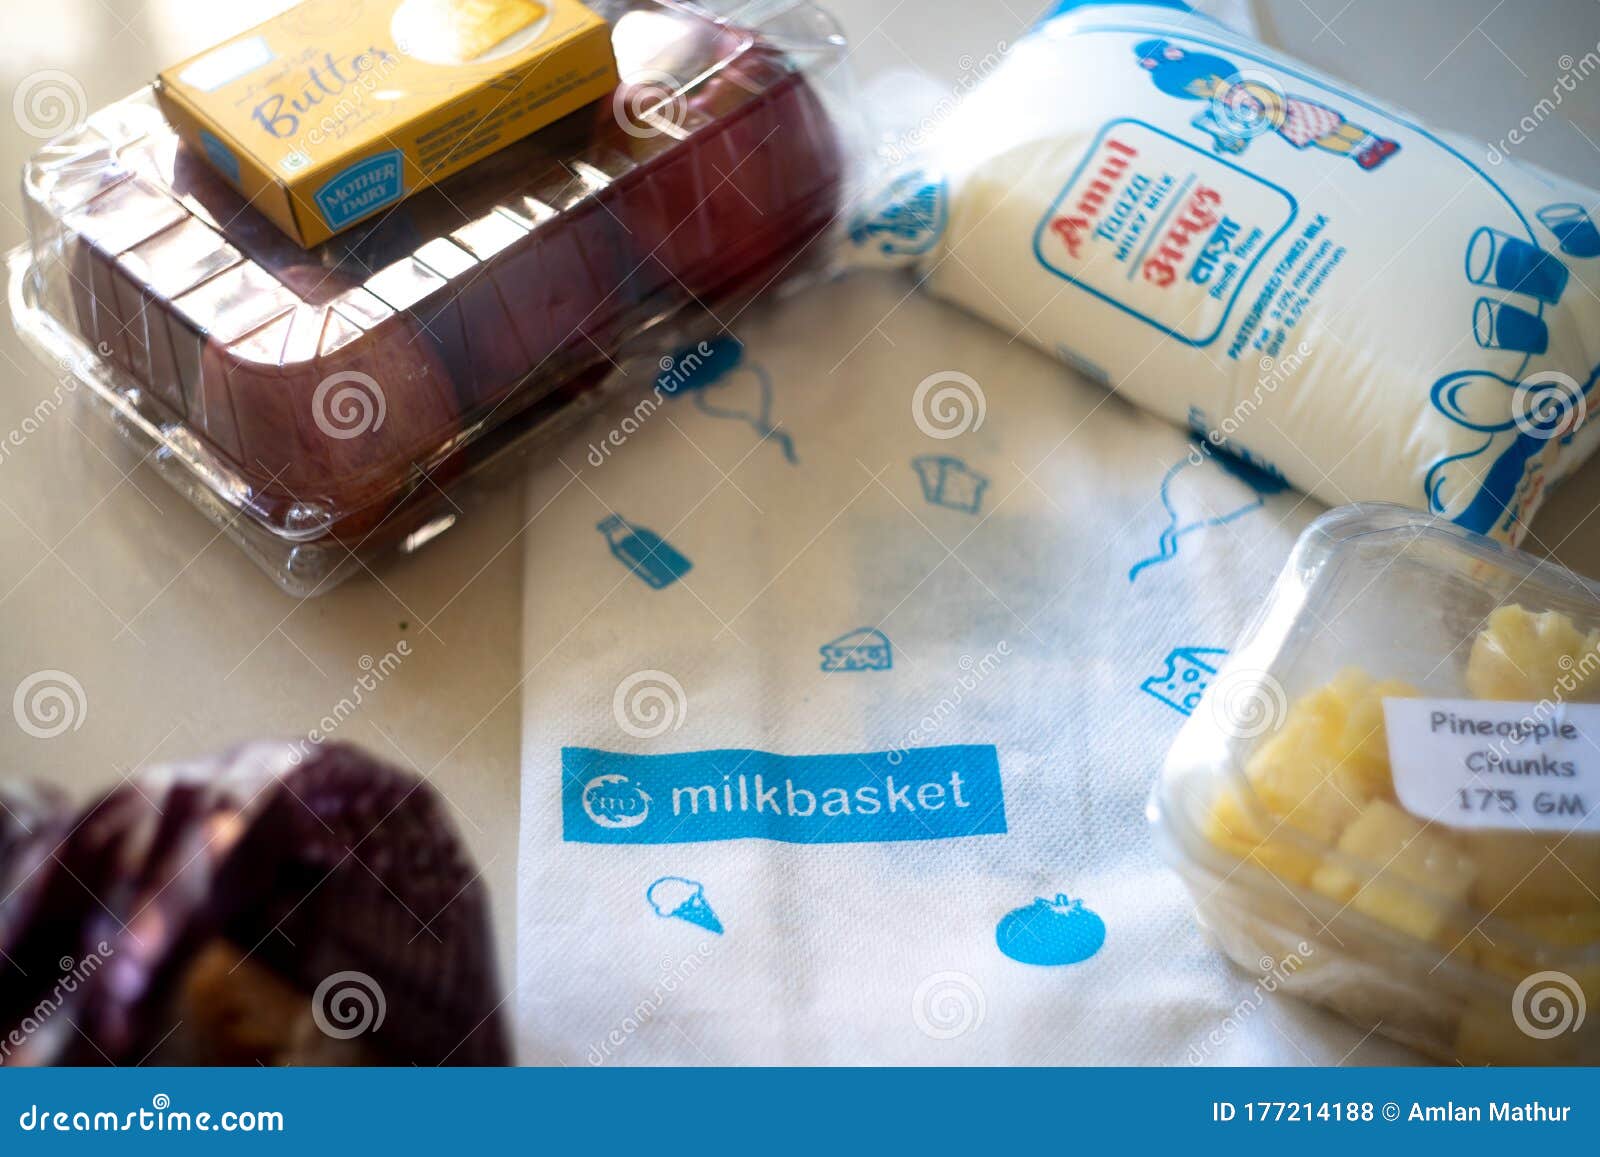 https://thumbs.dreamstime.com/z/imagen-plana-de-varios-productos-esenciales-para-el-hogar-como-frutas-mantequilla-leche-y-pan-procedentes-una-bolsa-mimbre-que-177214188.jpg